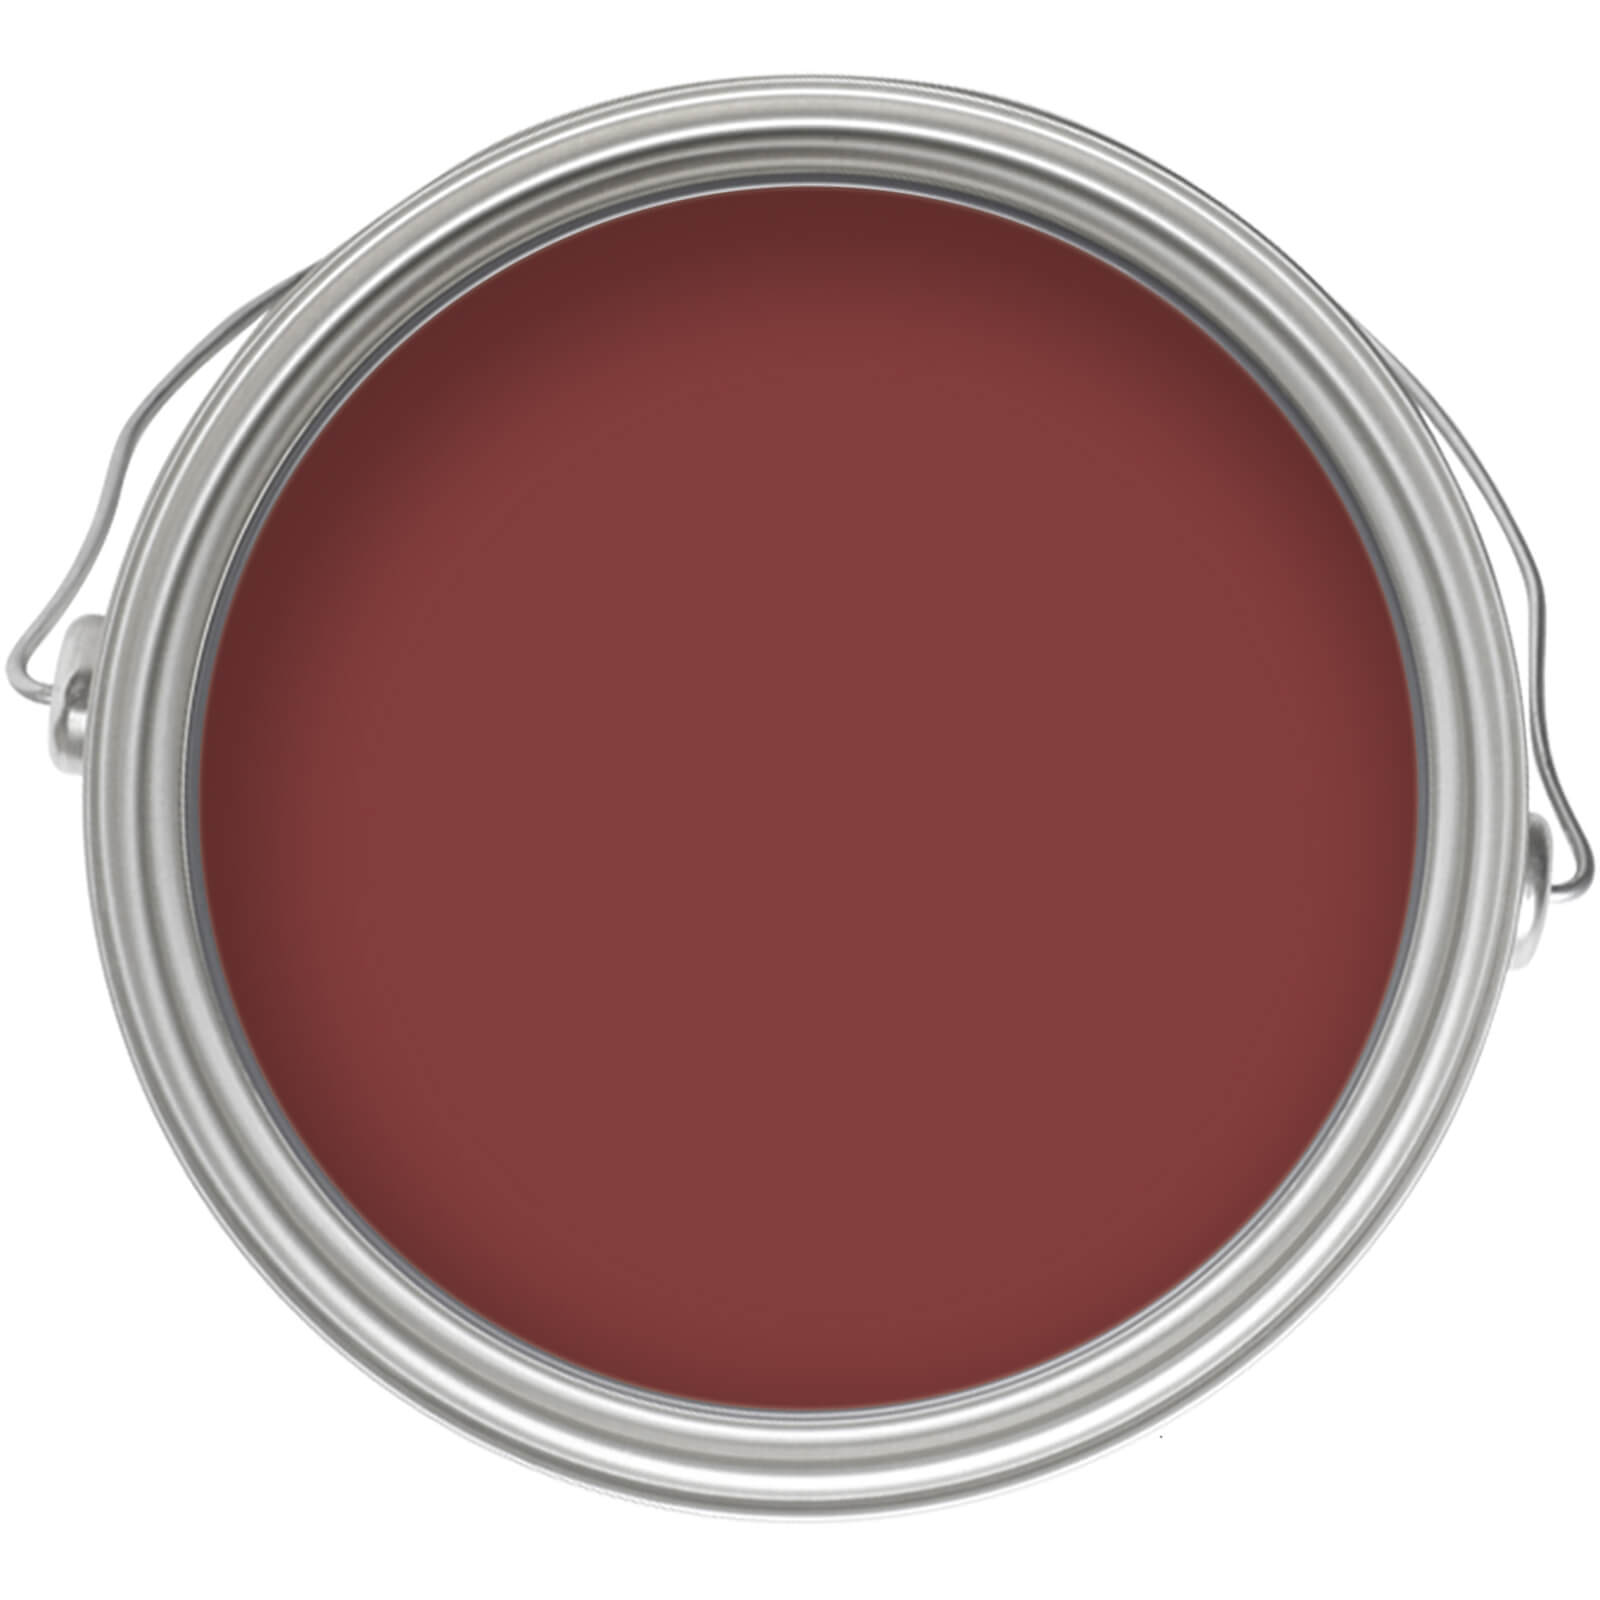 Homebase Exterior Gloss Paint - Red Vixen 750ml